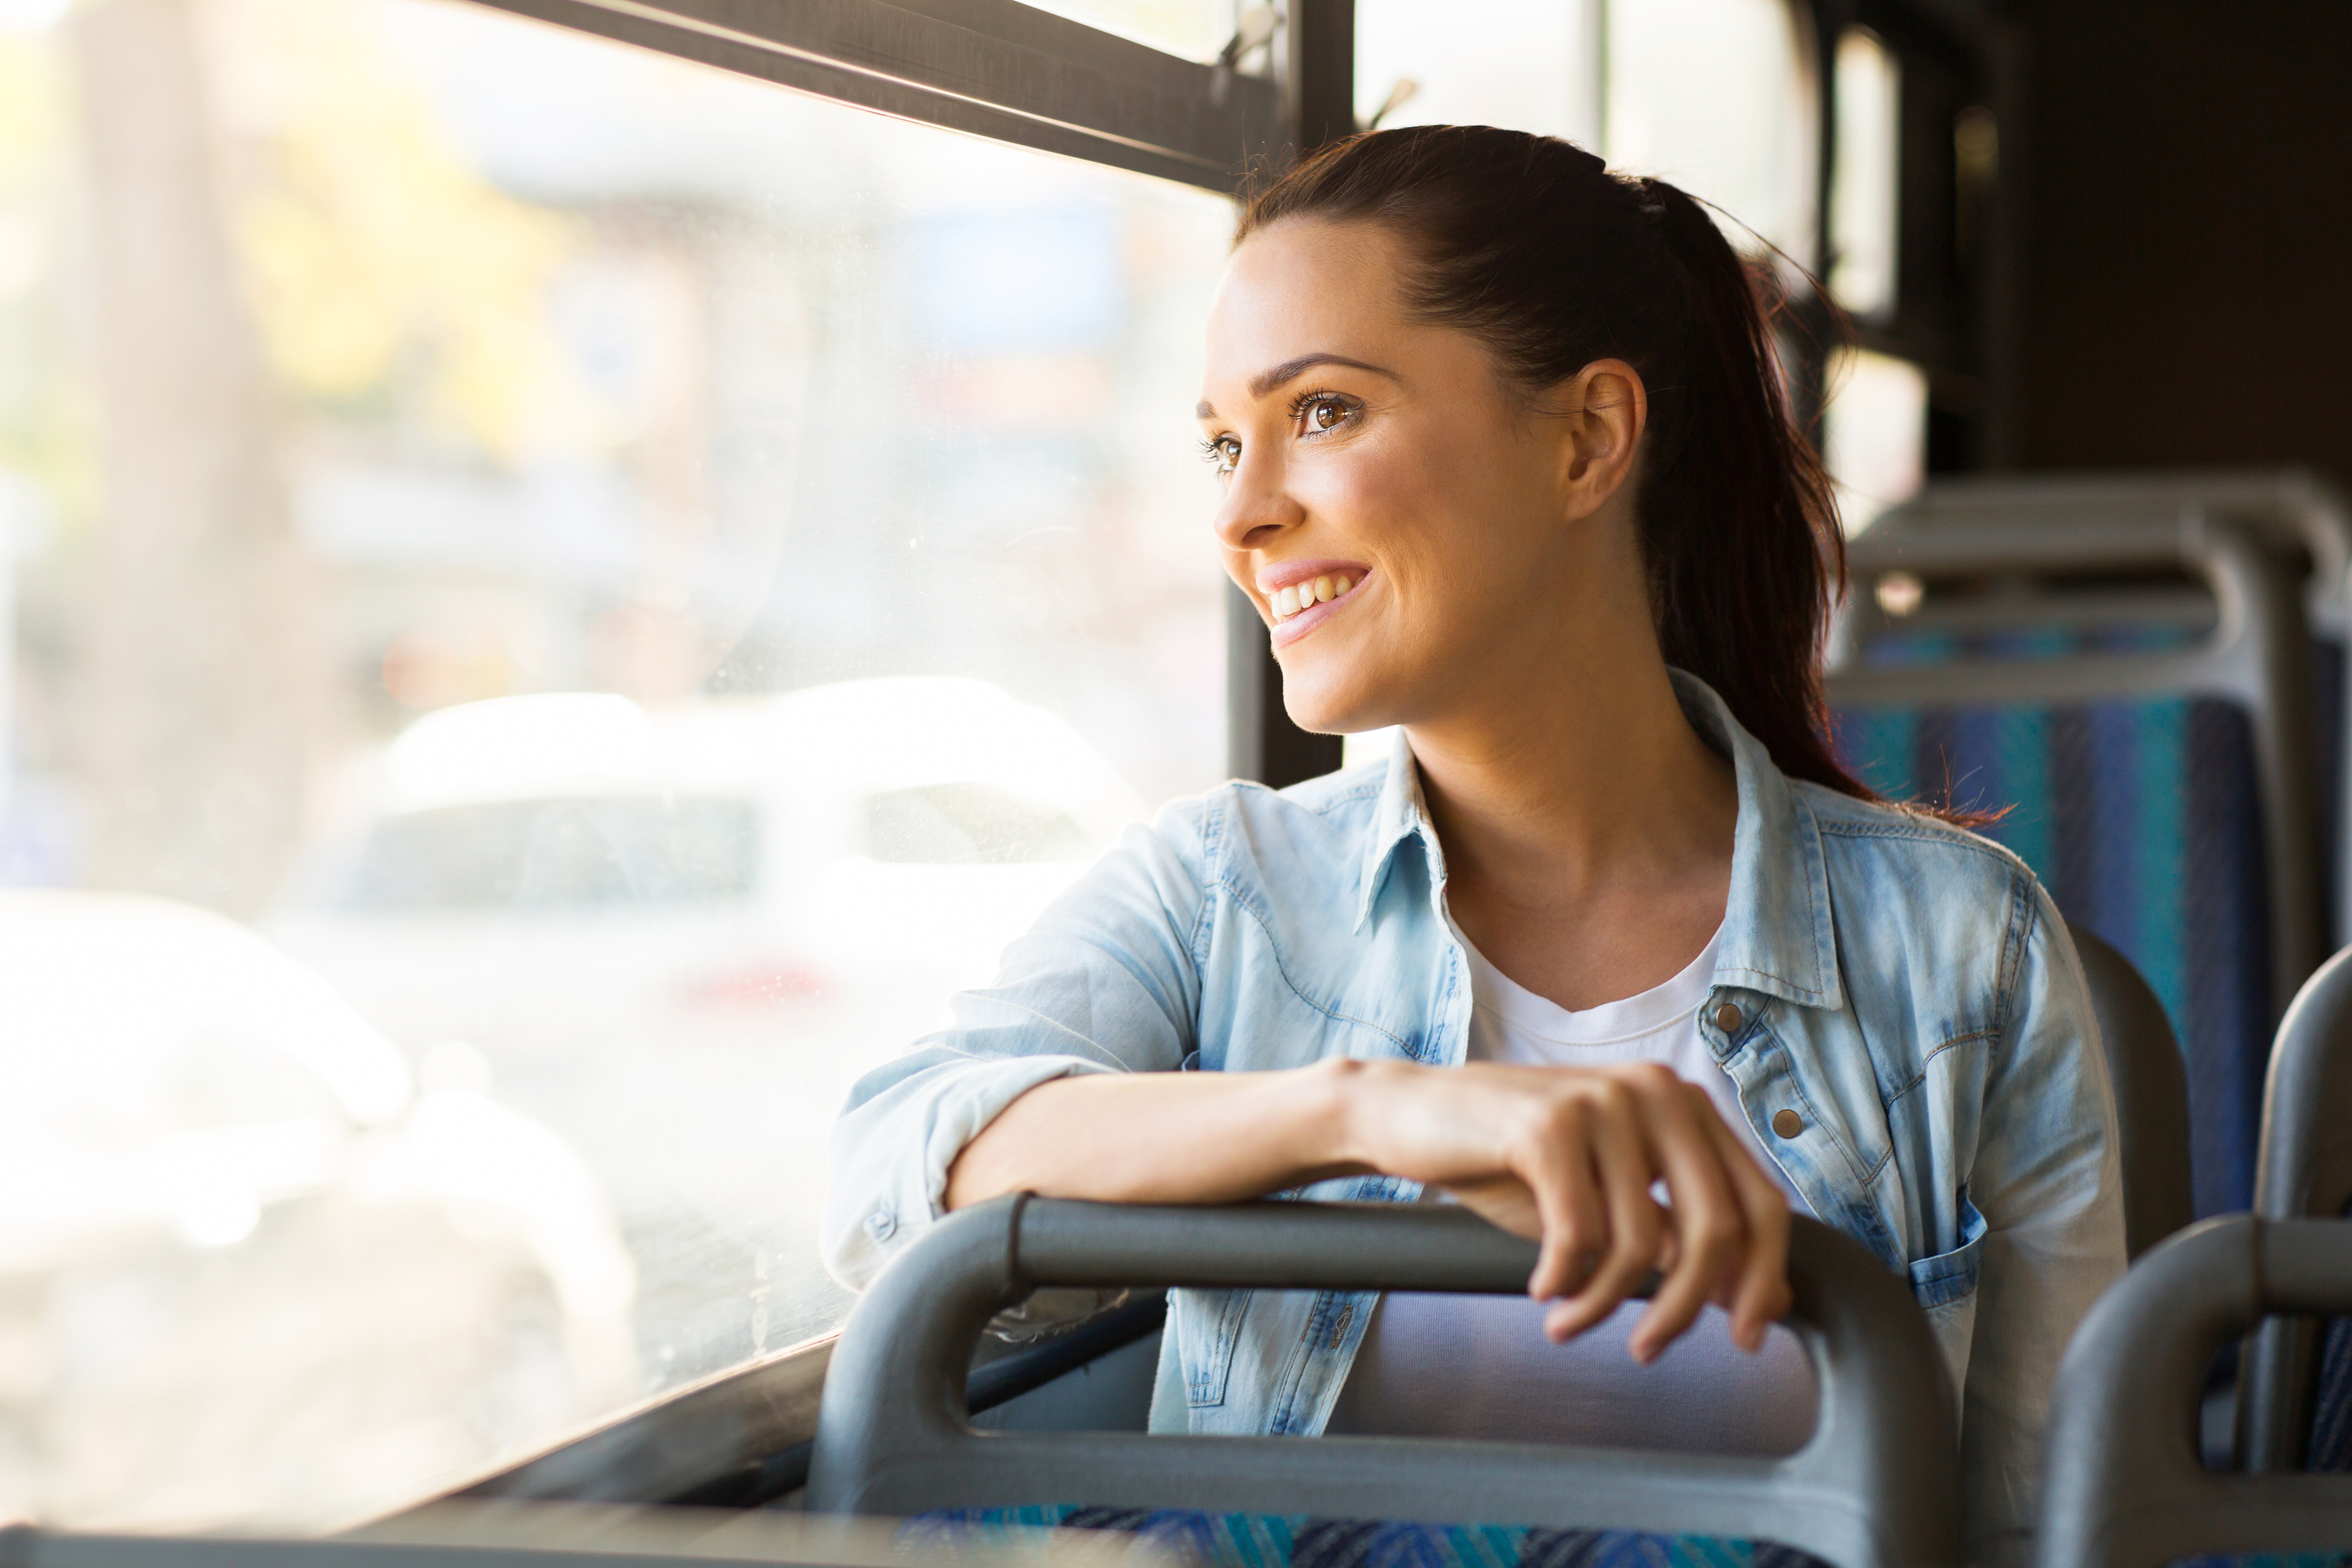 Female-Commuter-Public-Transit-Bus